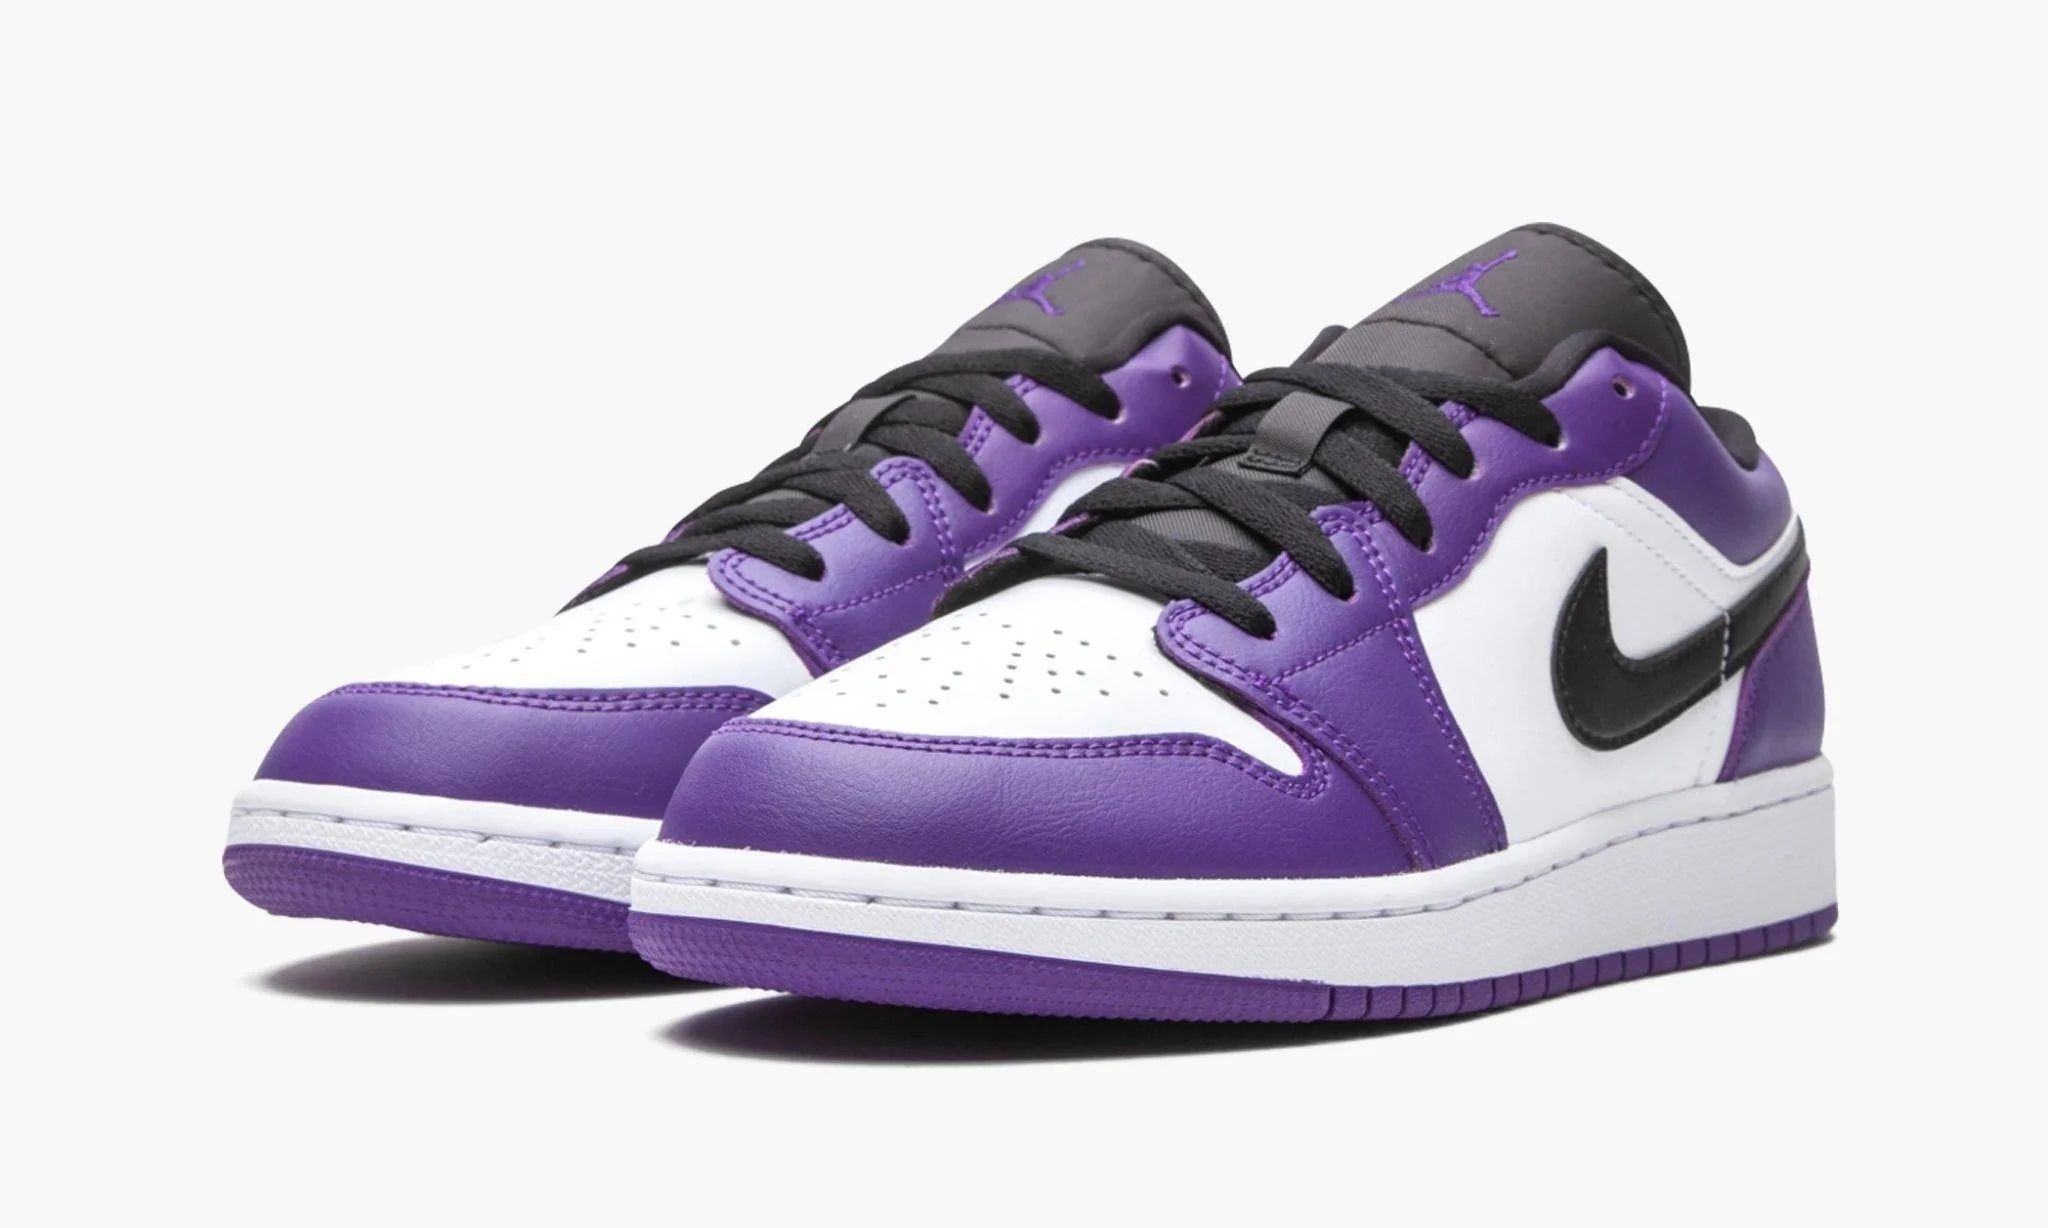 Nike Air Jordan 1 Low Court Purple. Nike Jordan 1 Low Court Purple. Nike Air Jordan 1 Low Purple. Nike Jordan 1 Low Purple.